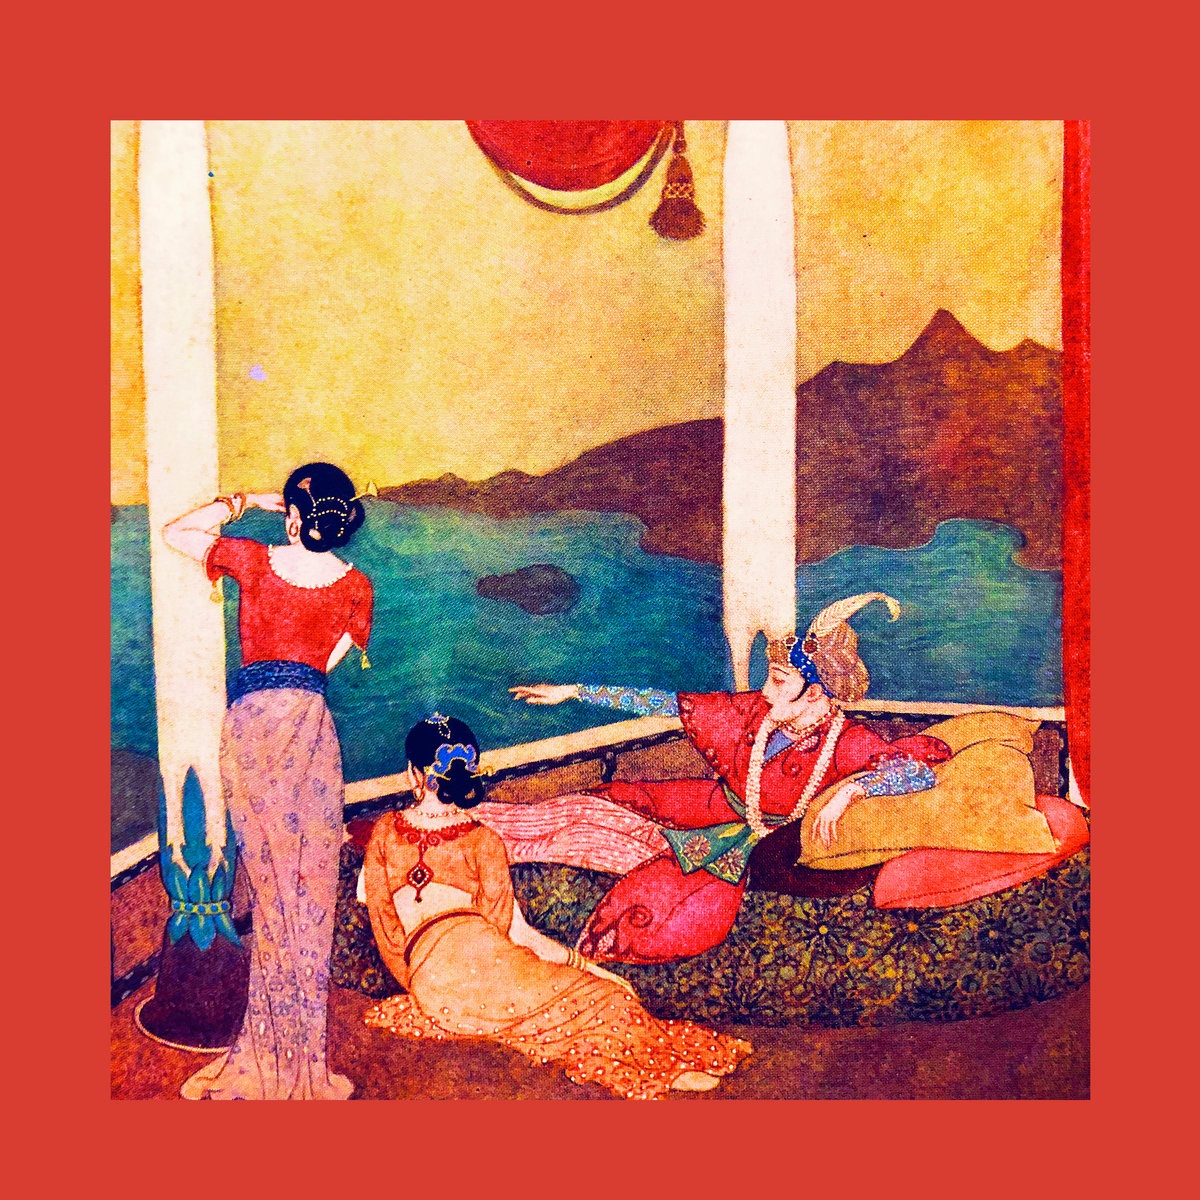 Horrid Red - Radiant Life vinyl cover